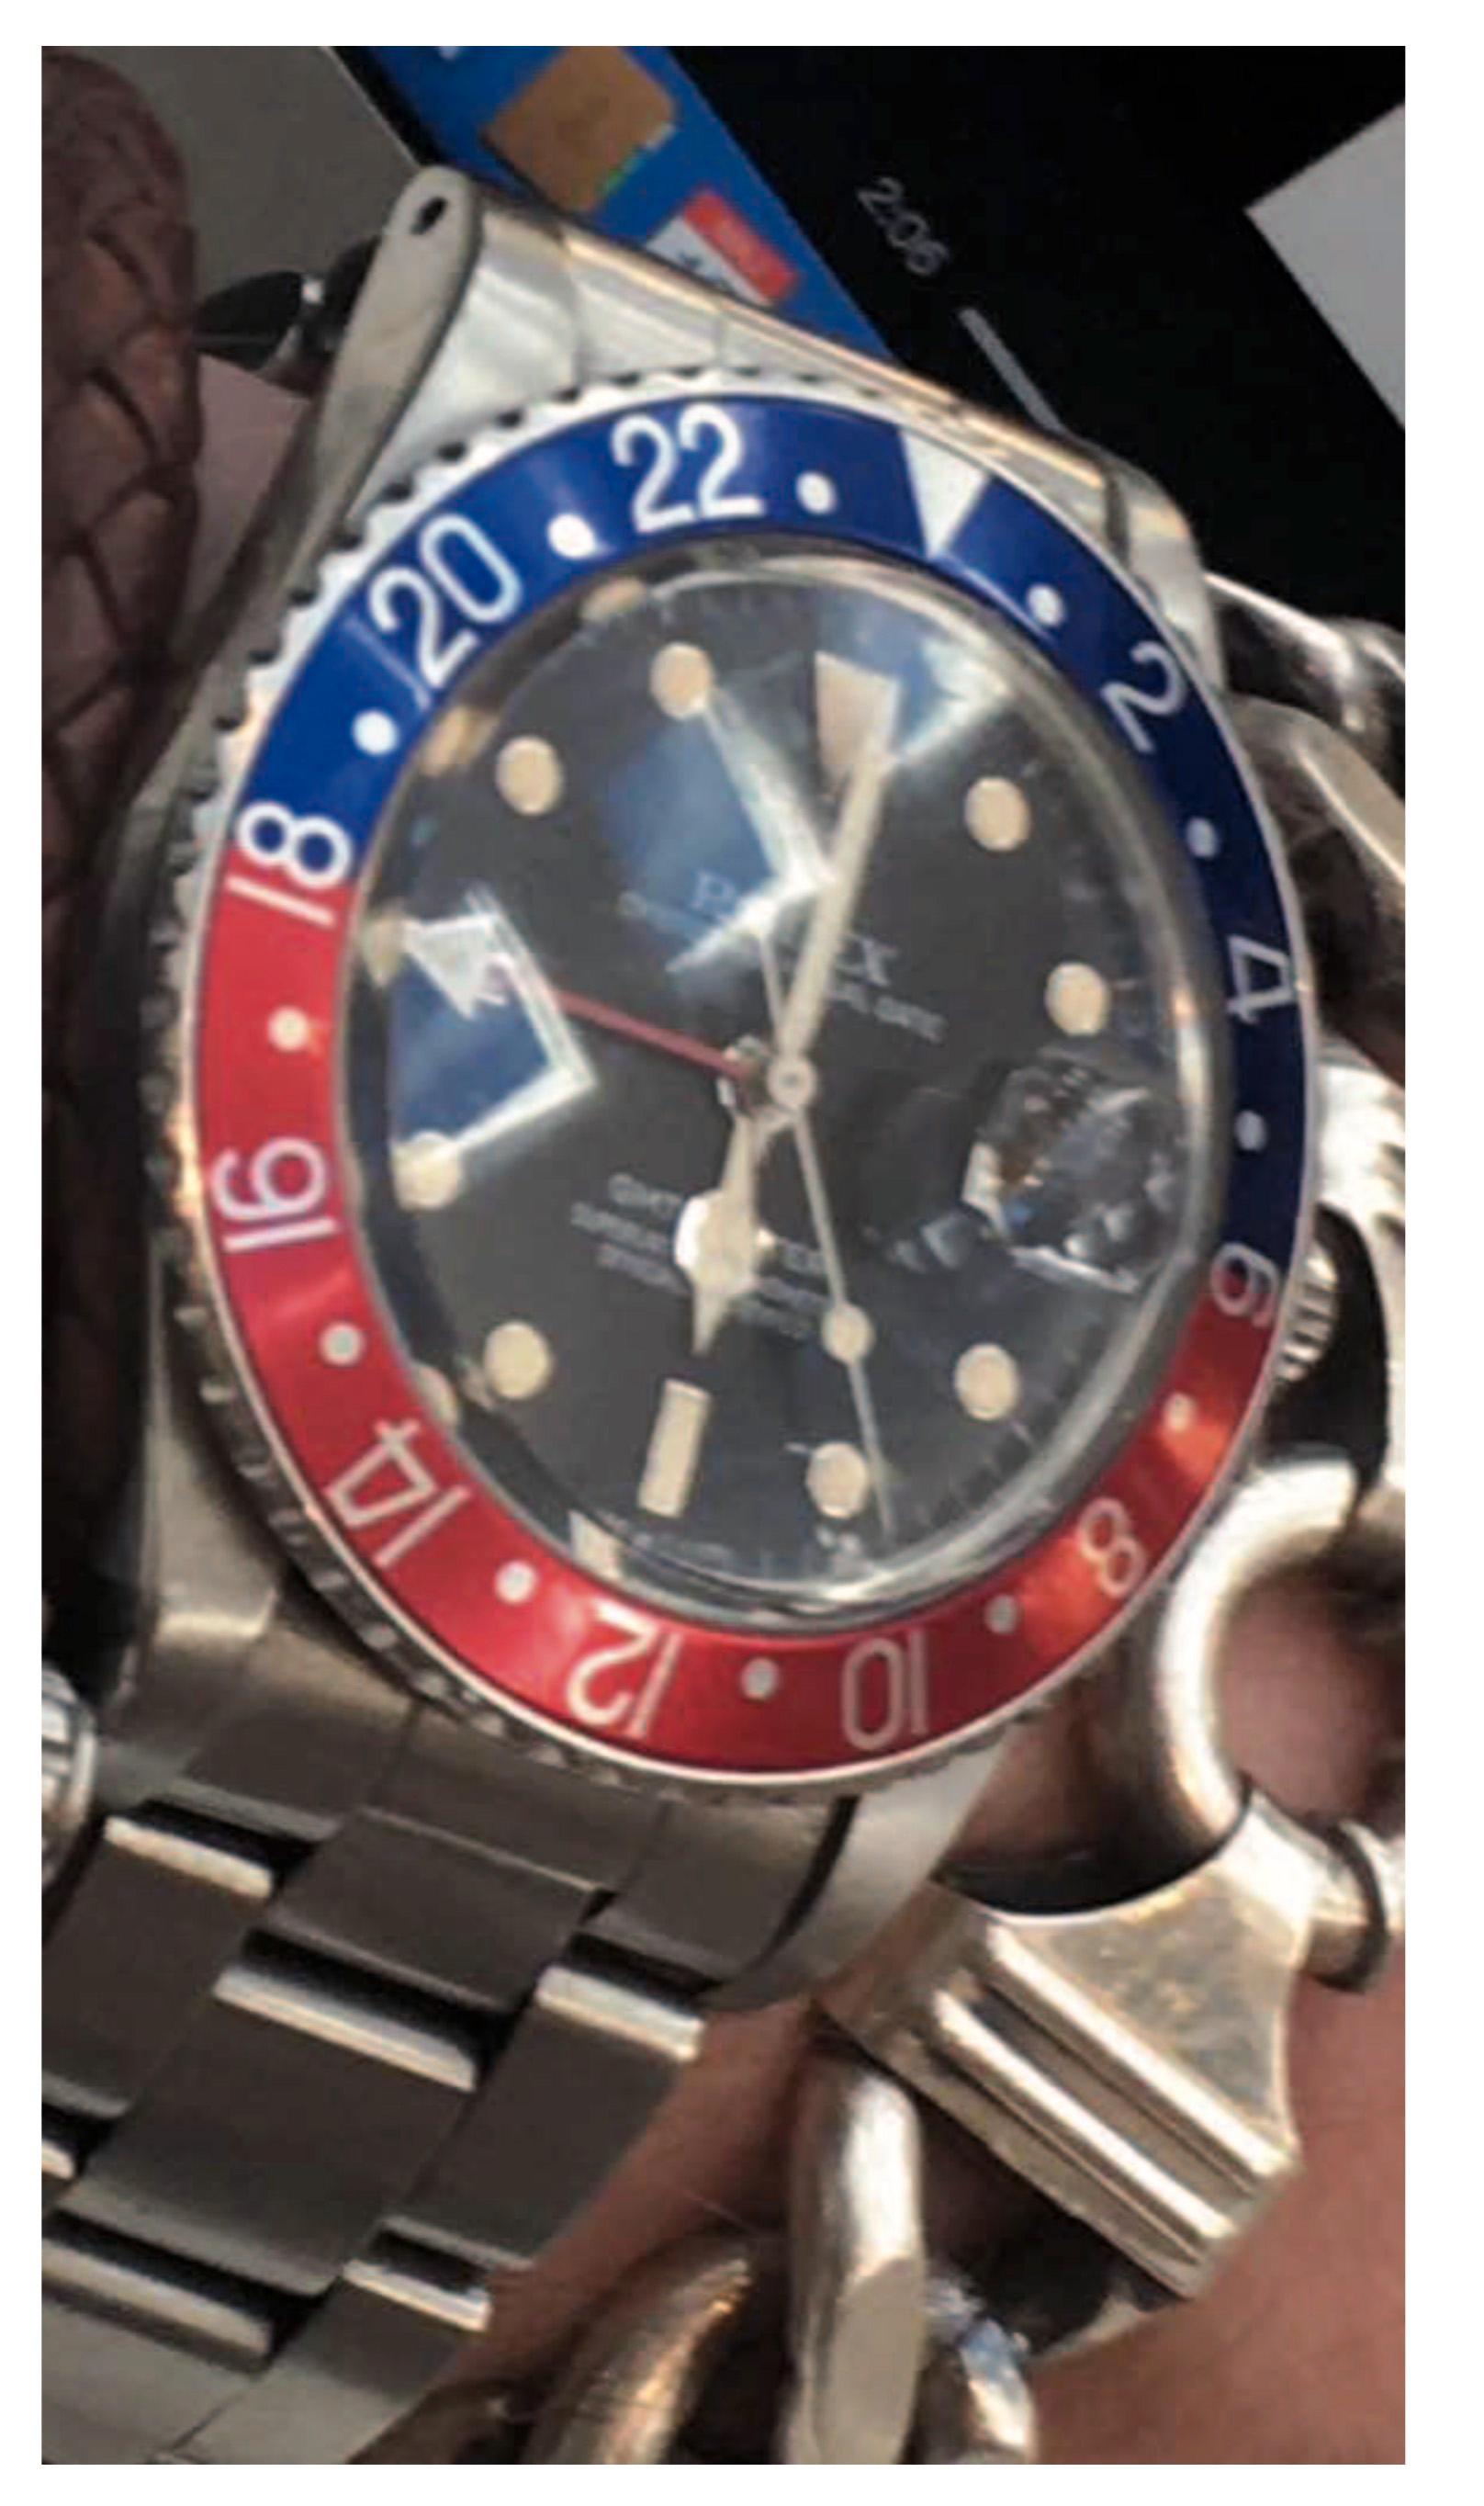 Rolex-klocka som blev bytet vid rånet på Birger Jarlsgatan.